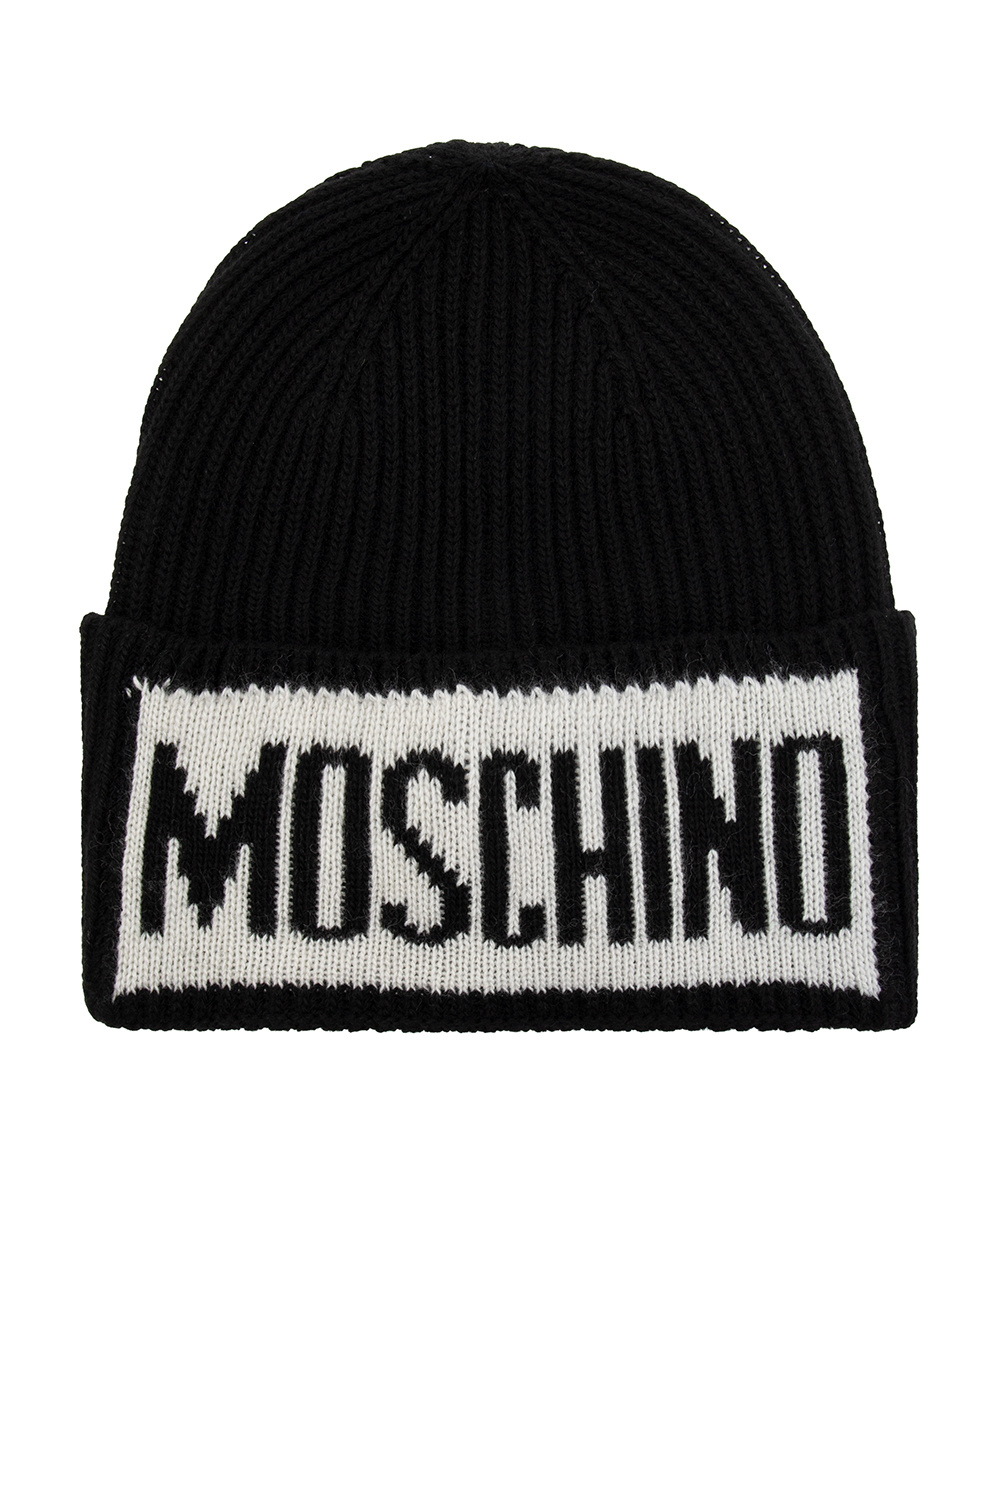 Moschino women s caps